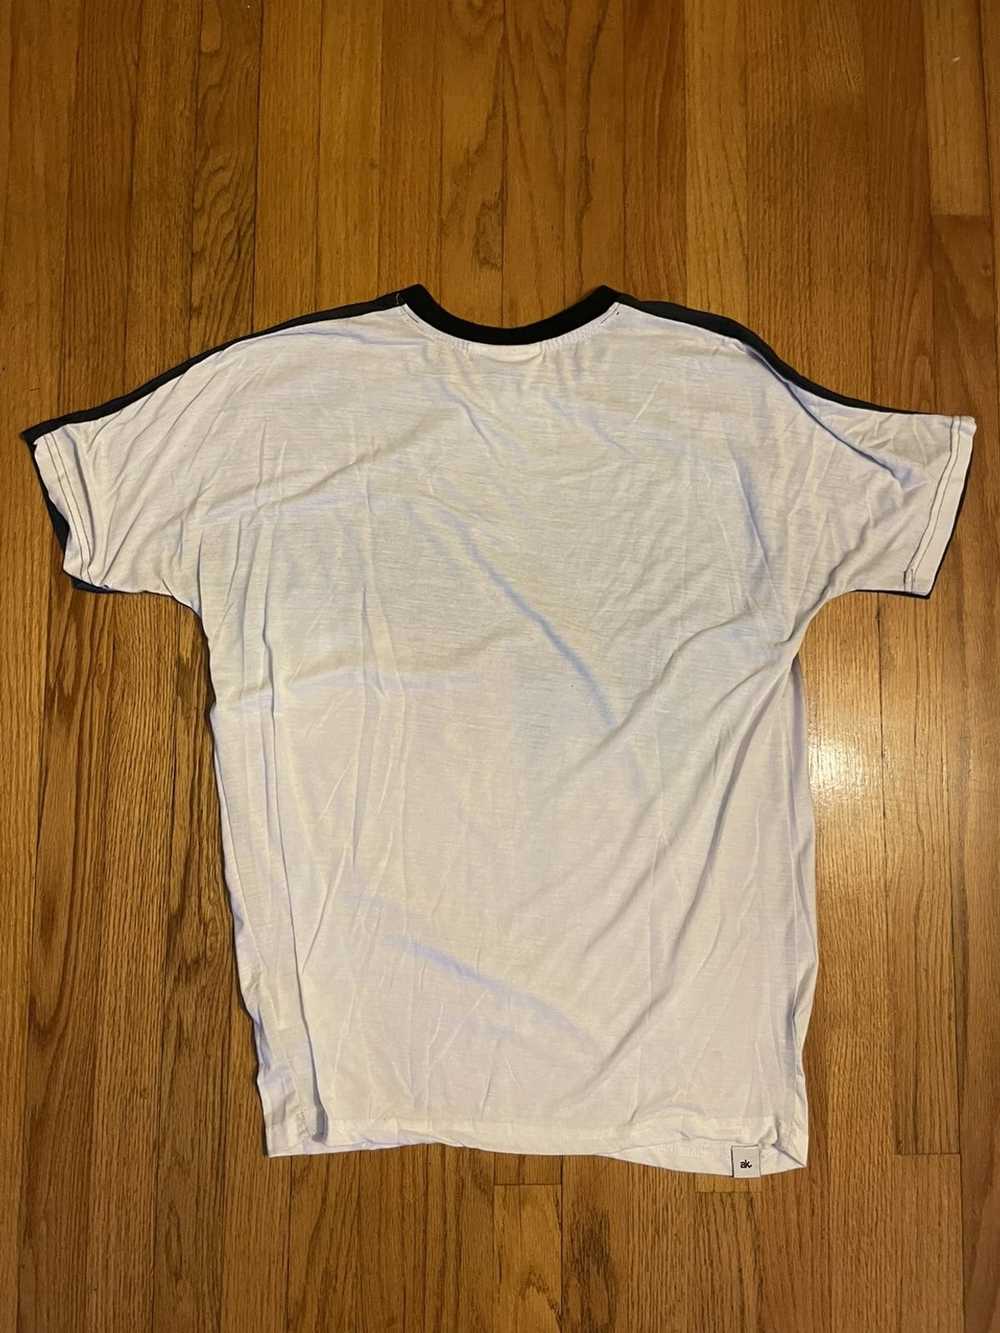 Akomplice Akomplice Drip Shirt M - image 3